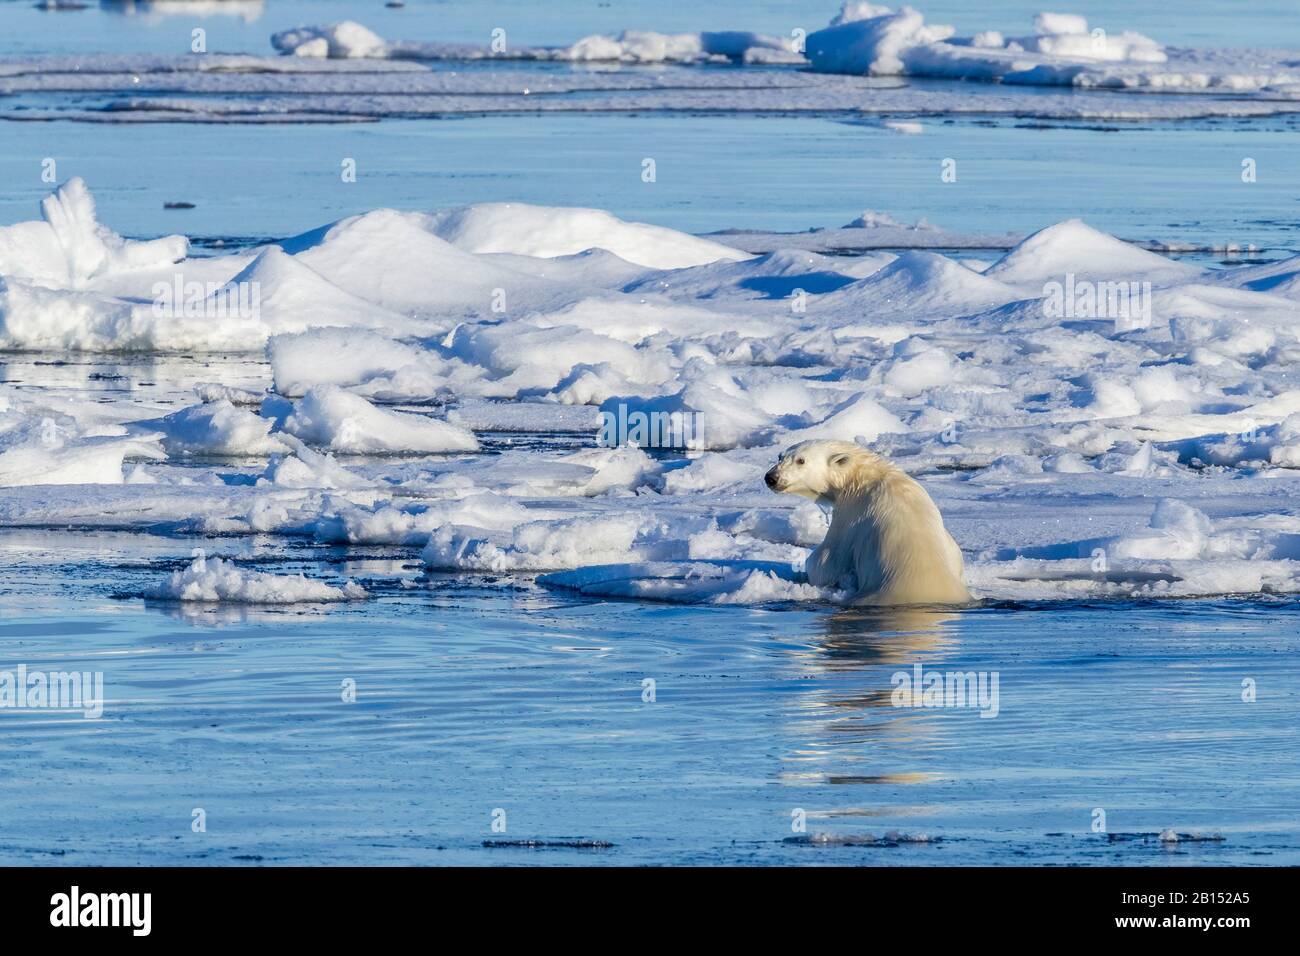 Ours polaire (Ursus maritimus), sur glace dérivante, Groenland Banque D'Images